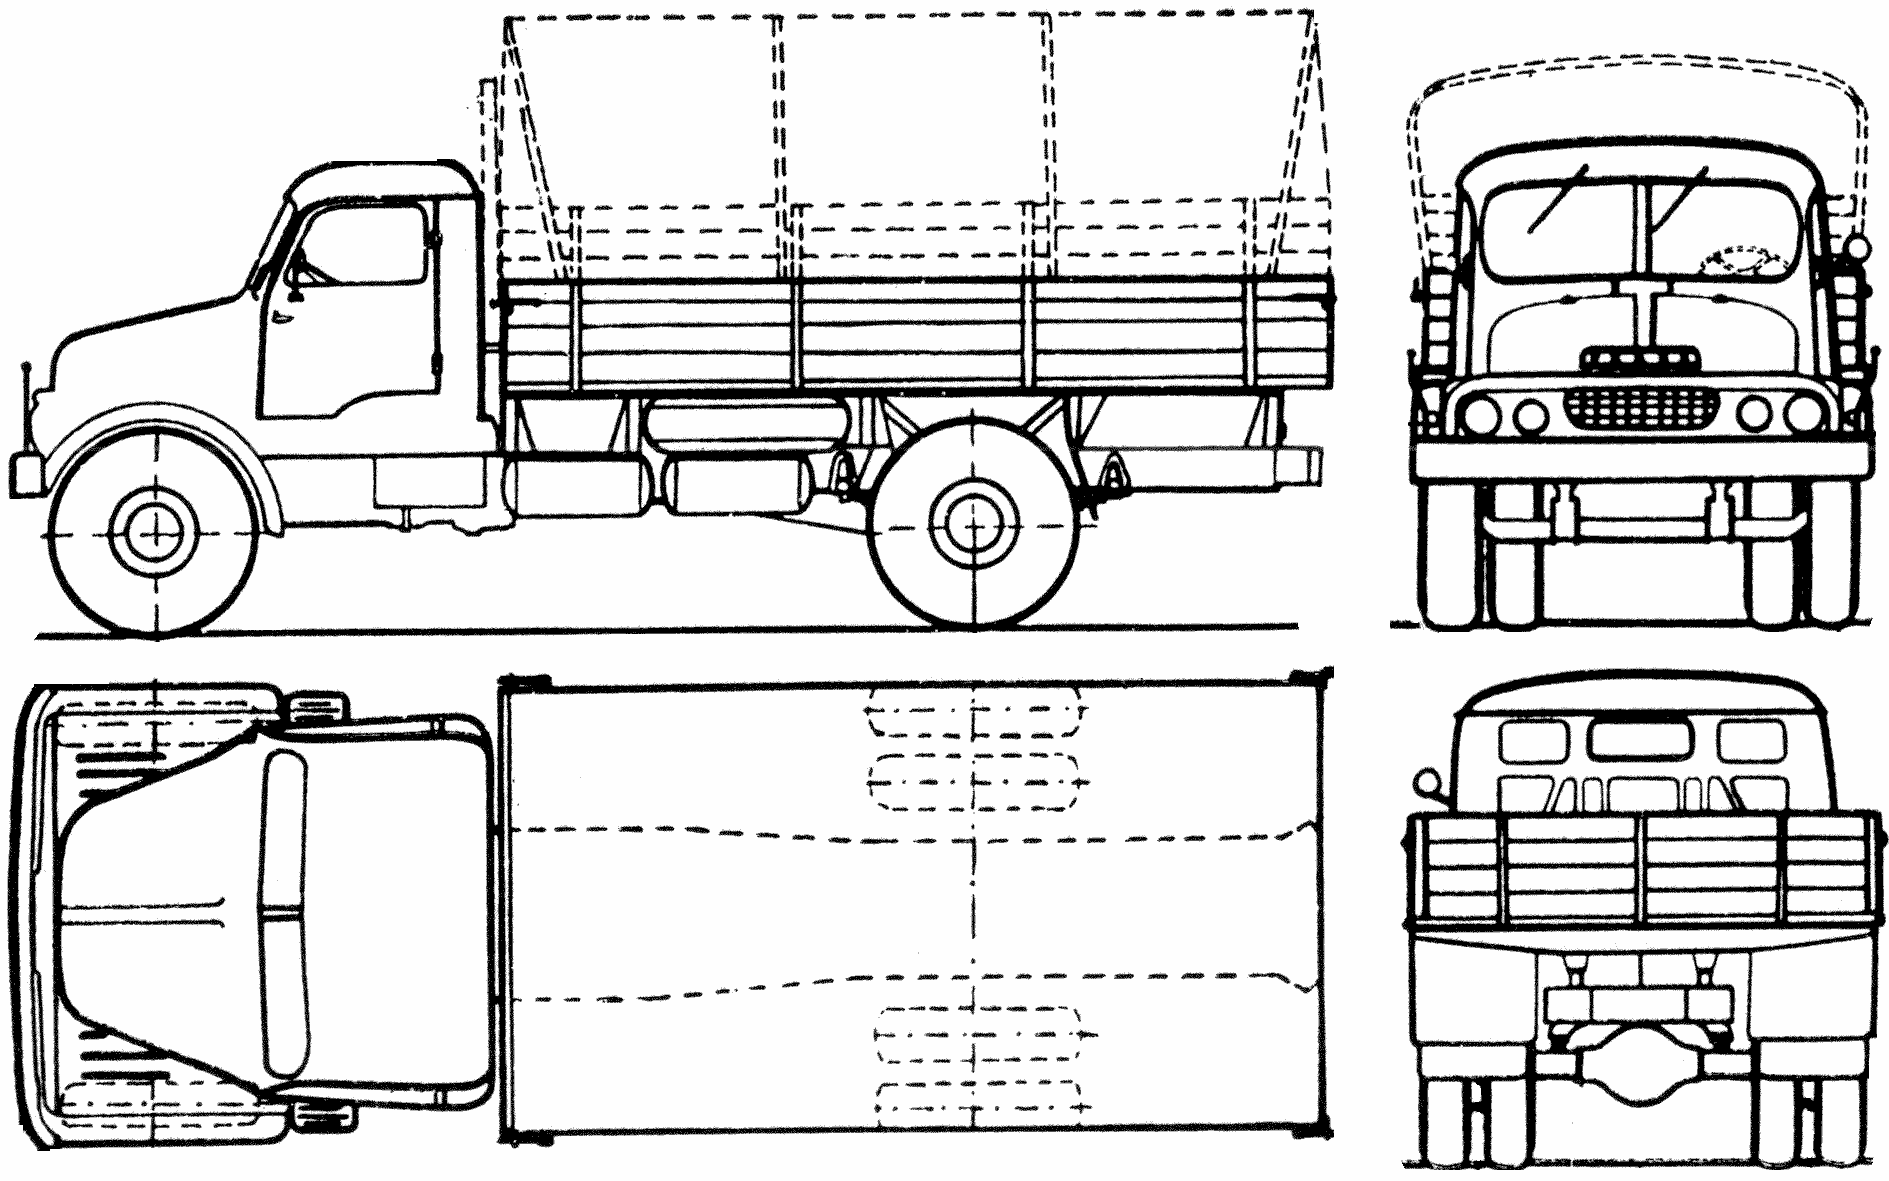 Praga S5T blueprint